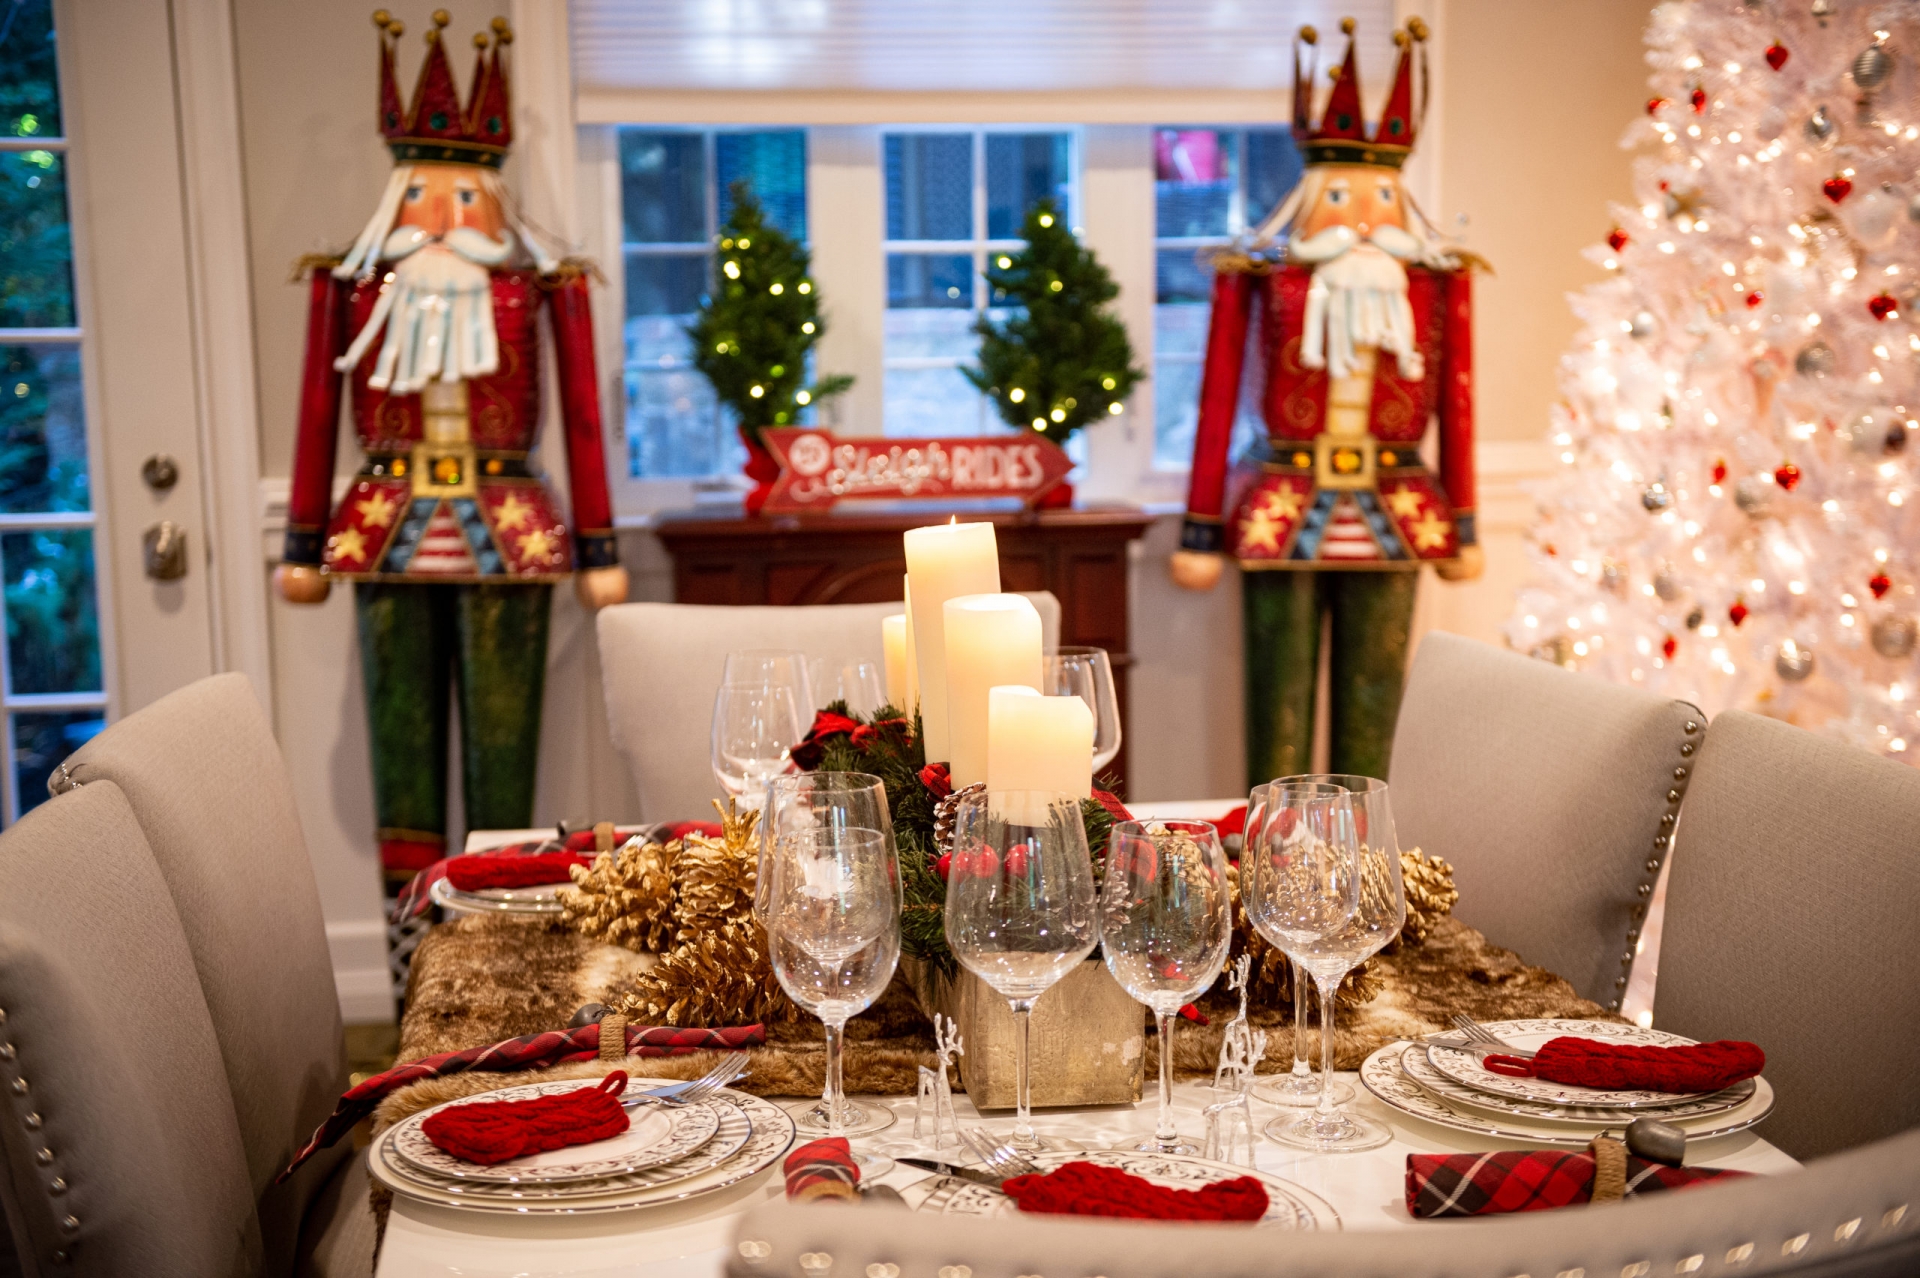 Bên cạnh một chiếc bàn ăn hoành tráng gần khu vực bếp thì bàn ăn chính càng đẹp mắt hơn nữa. Từ góc nhìn này, bạn sẽ thấy cây thông Noel màu trắng cỡ lớn rực sáng ở góc phòng, nơi có 2 bác lính đang “canh gác”. 